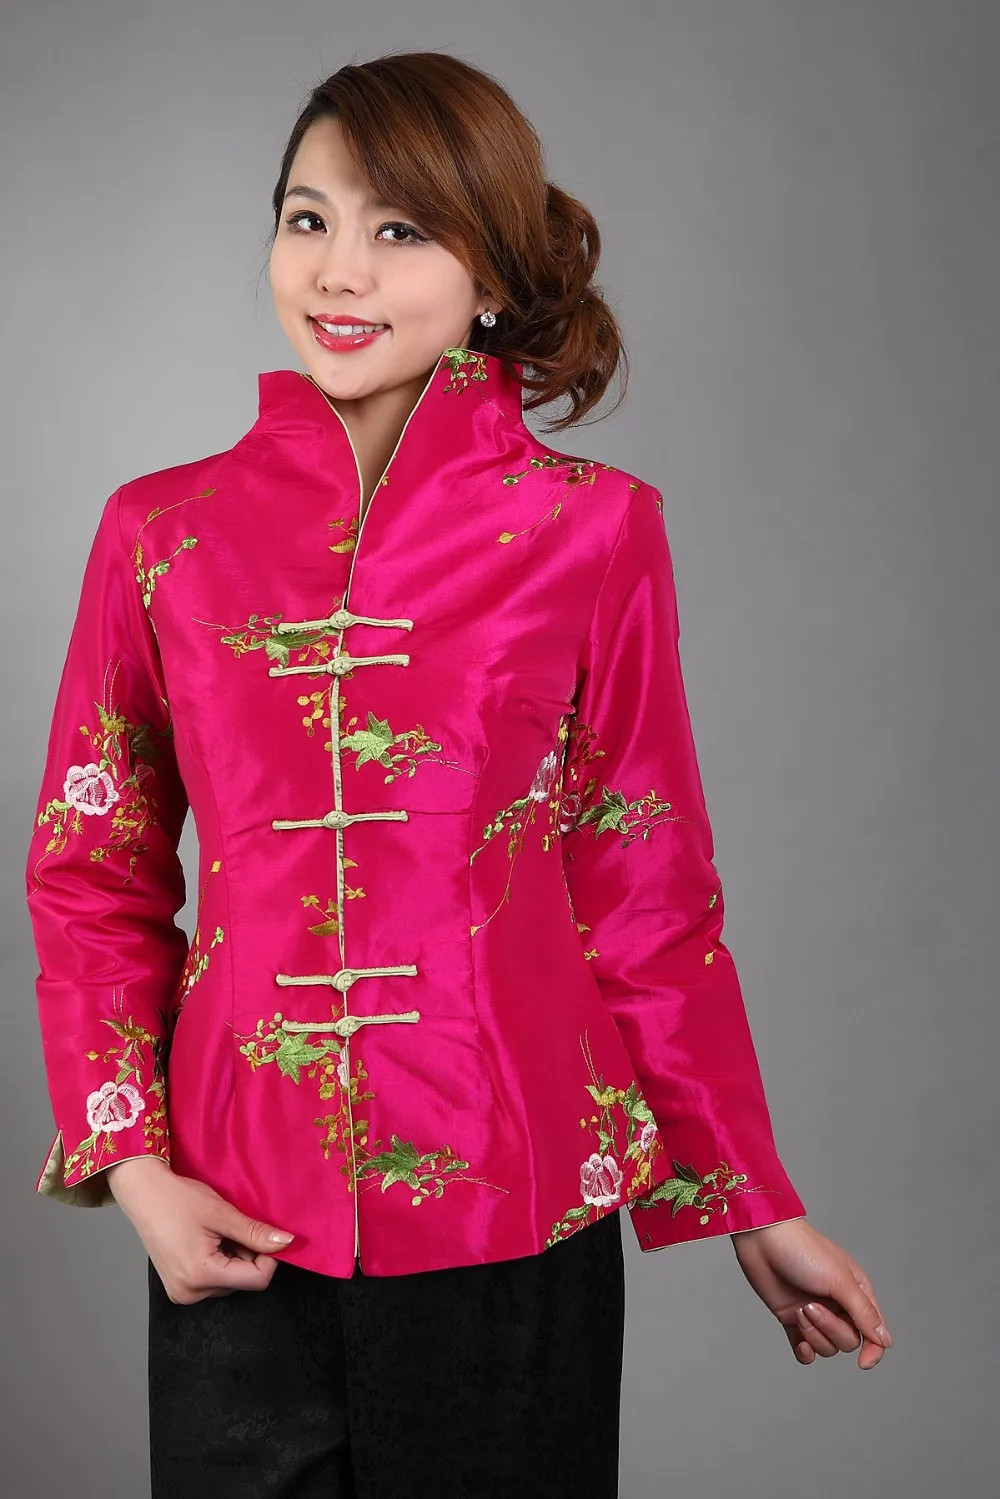 Модные Бежевые женские атласная куртка с вышивкой Демисезонный пиджак цветок Размеры размеры s m l xl XXL, XXXL Mujer Chaqueta Mny12E